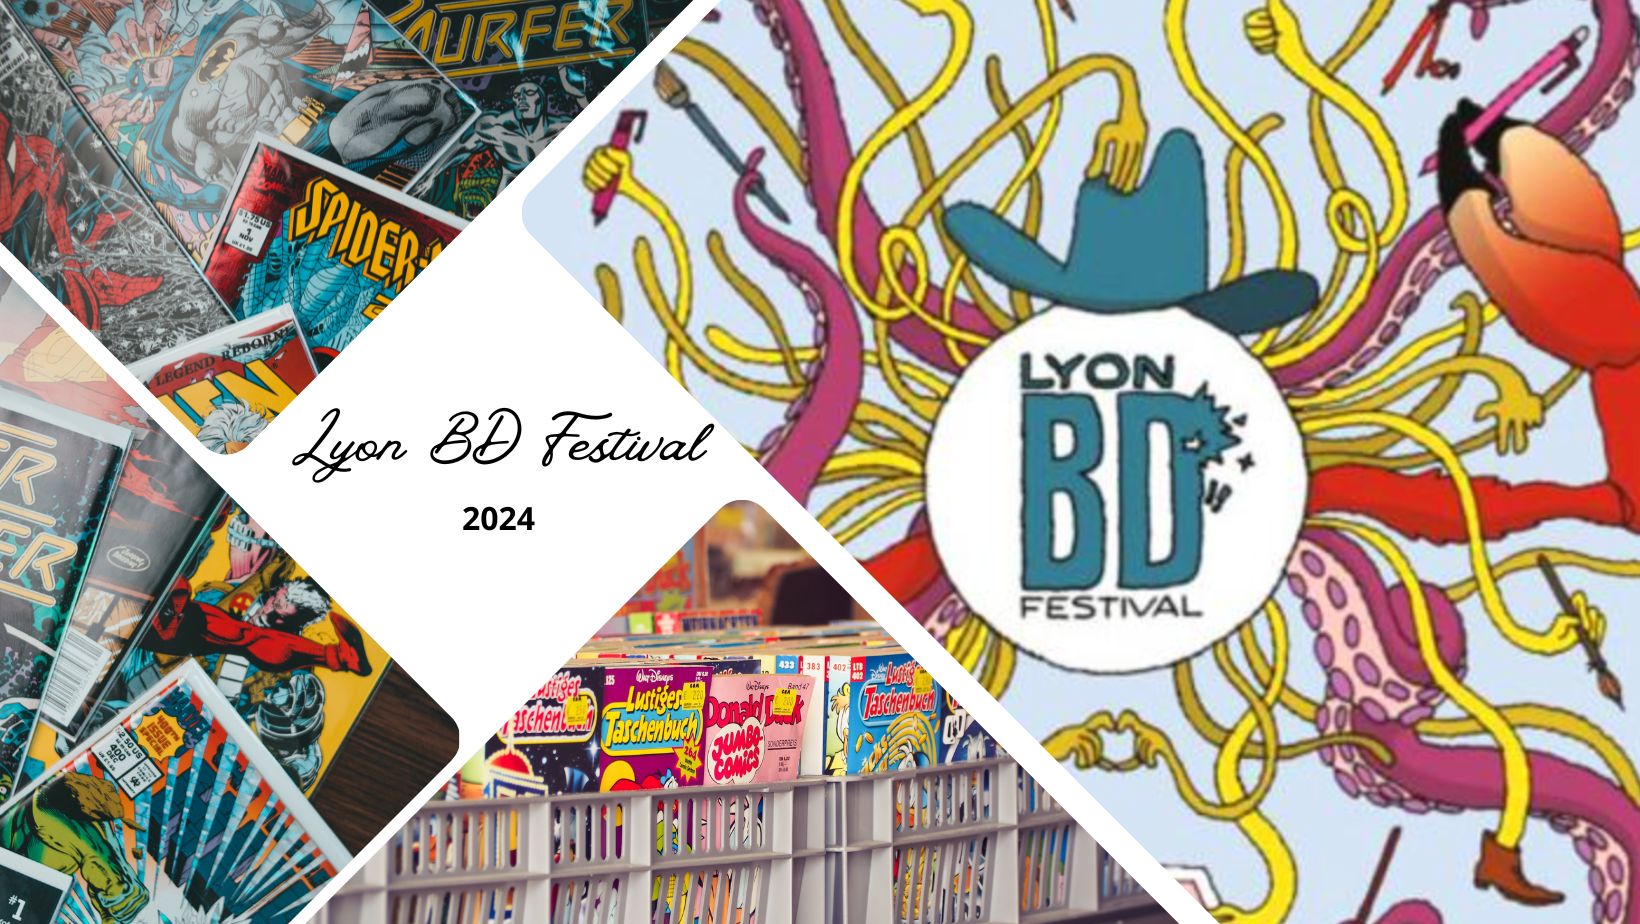 Lyon BD Festival 2024, Festival international de bande dessinée à Lyon : programme et informations